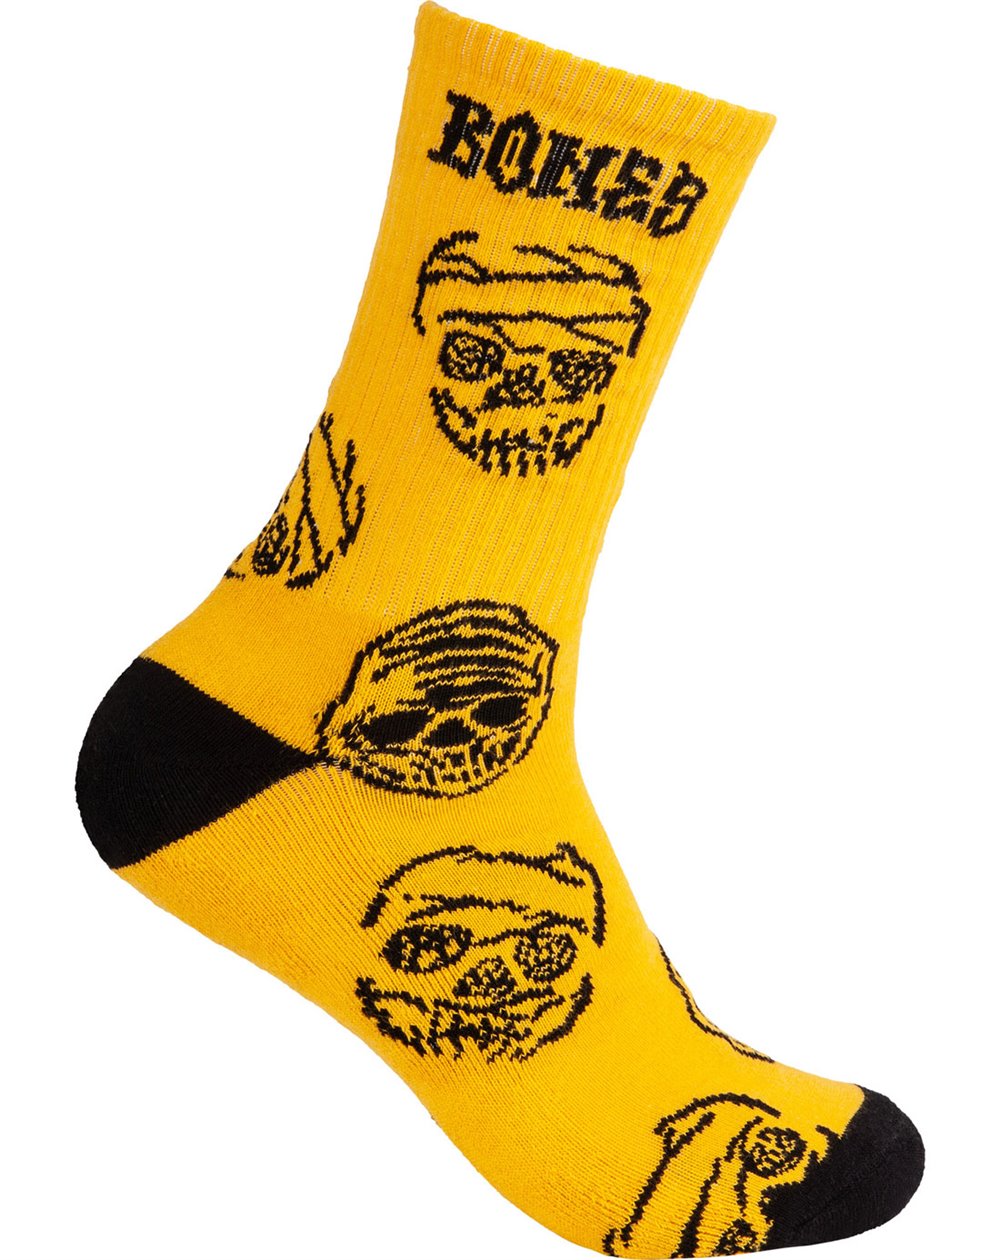 Bones Wheels Black & Gold Skate Socks (Gold)